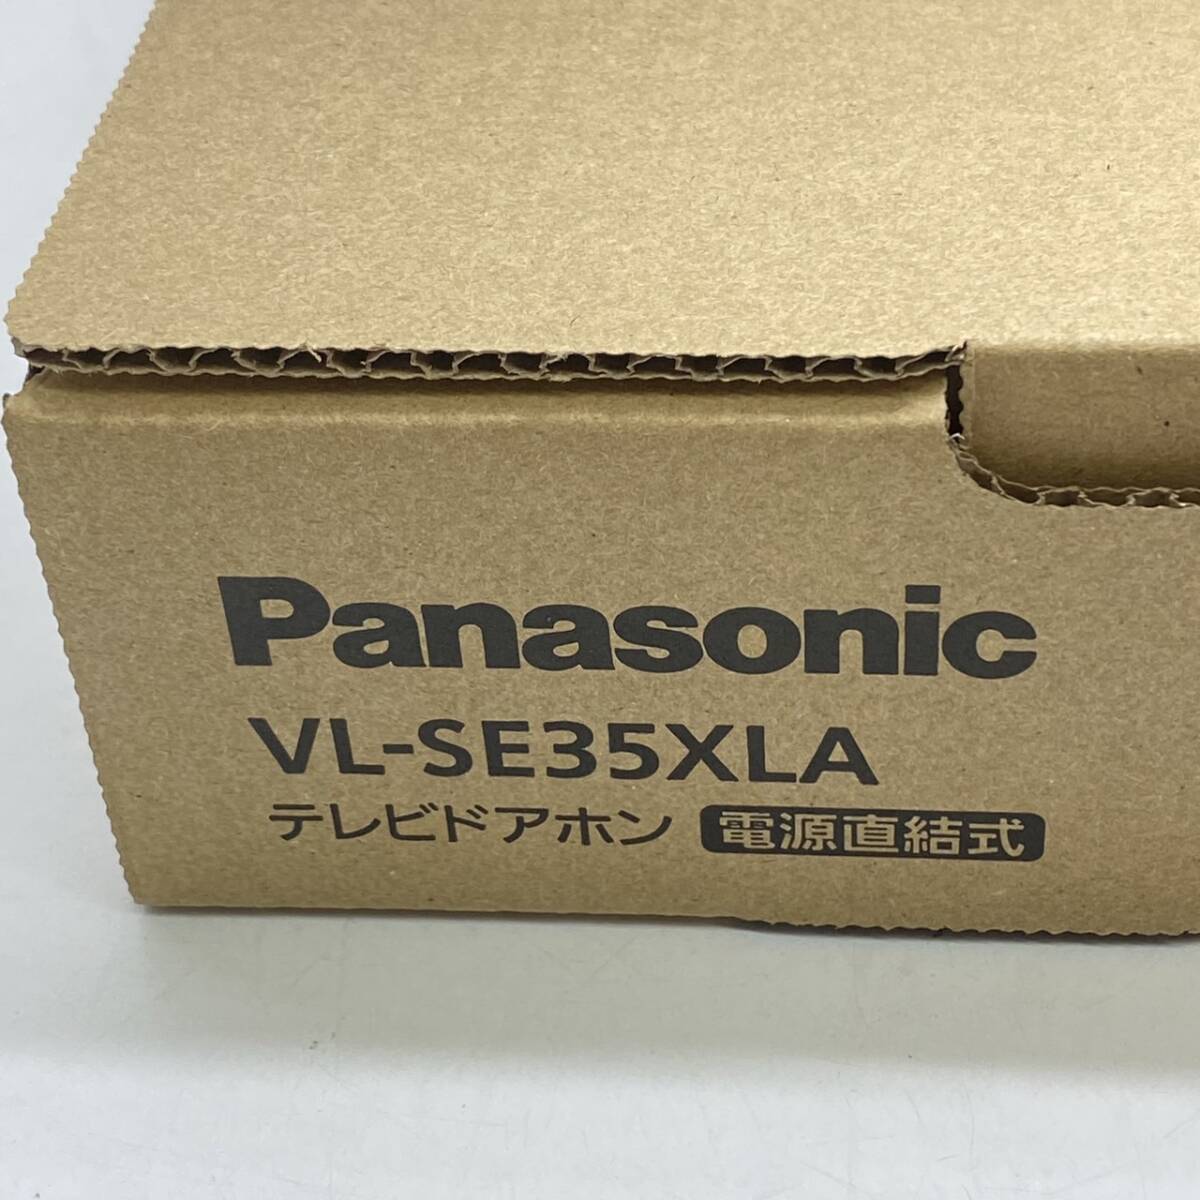 送料無料g30579 Panasonic パナソニック VL-SE35XLA テレビドアホン 電源直結 録画 録音機能付き 防犯 セキュリティ インターホン ドアホン_画像3